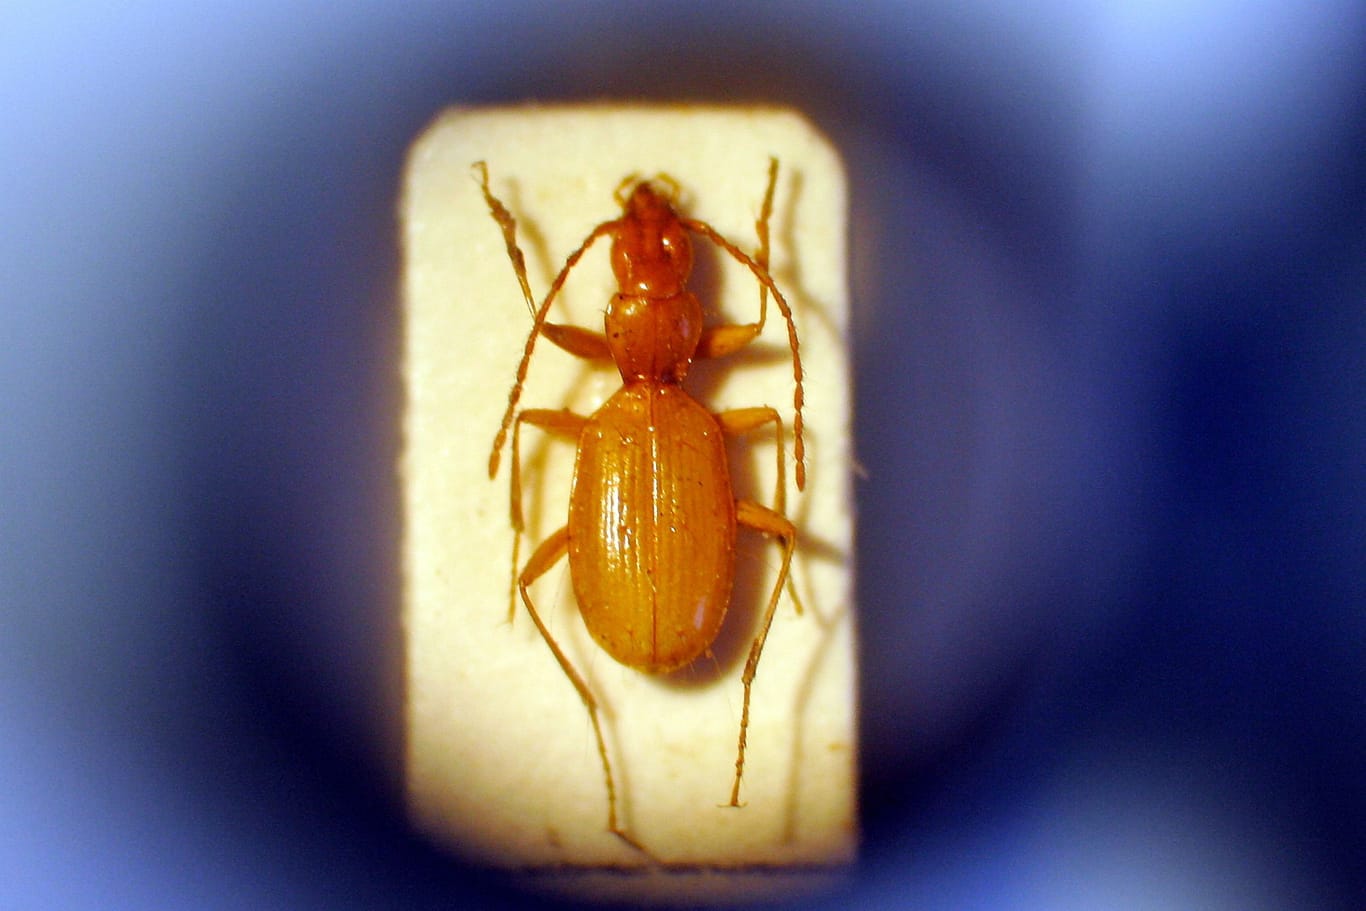 Anophthalmus hitleri (Archivbild): Der Käfer ist unter Neonazis beliebt.